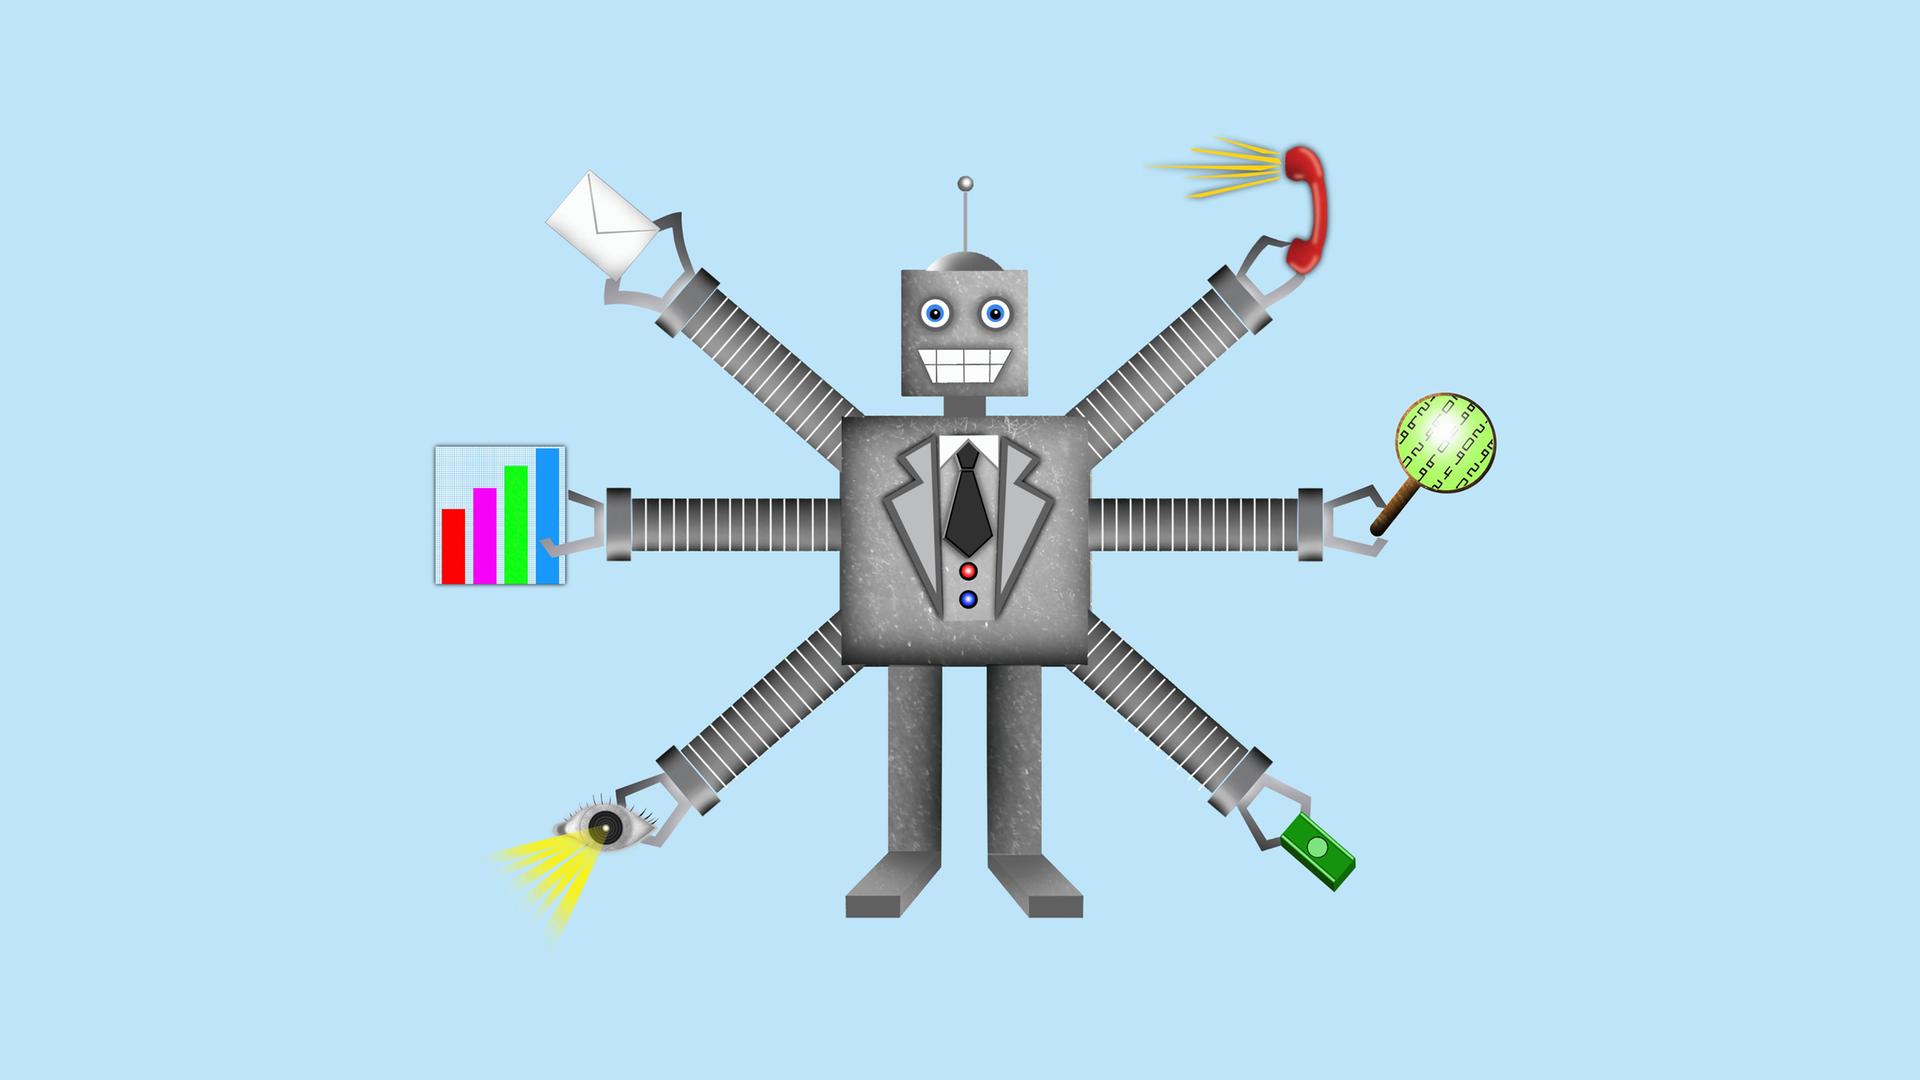 Grafik eines Roboters mit mehreren Armen, die verschiedene Arbeitsutensilien halten